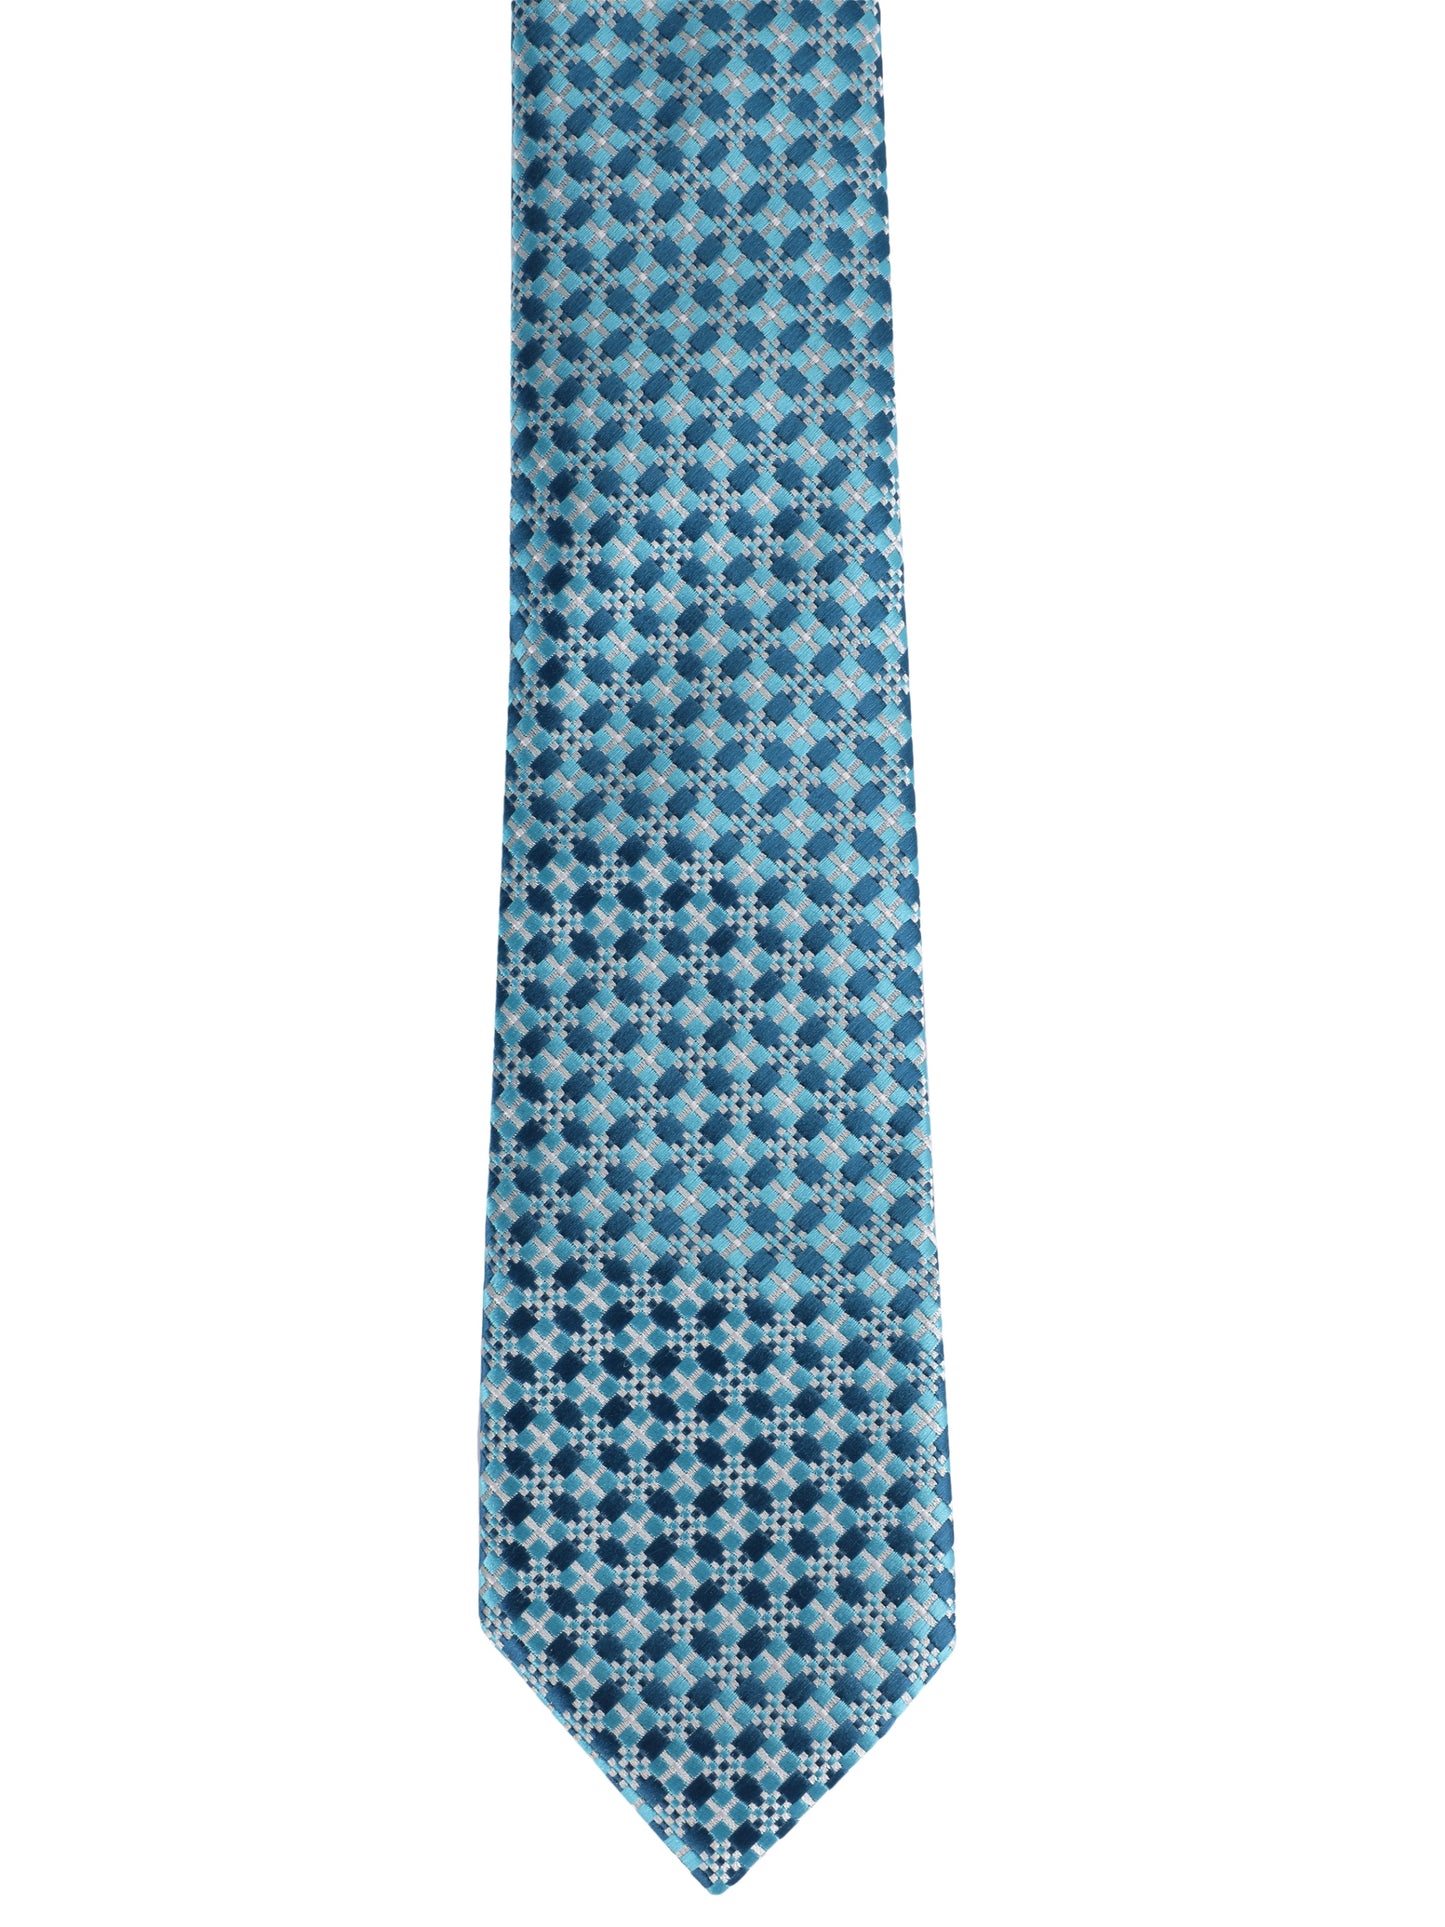 Alvaro Castagnino Microfiber TURQUOISE Coloured Necktie for Men